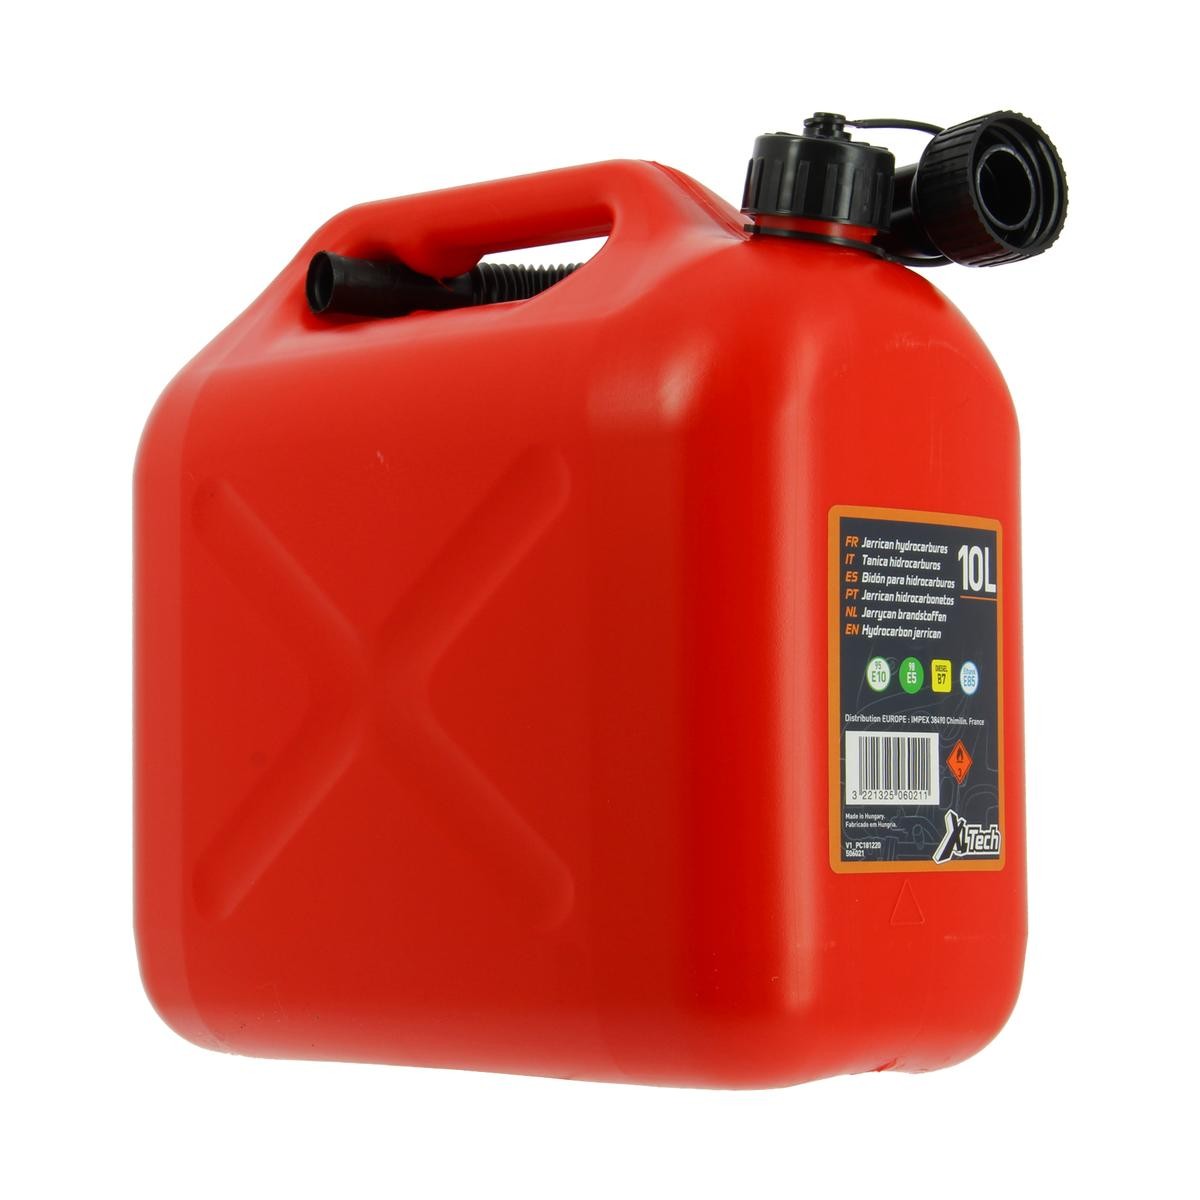 XL 506021 Fuel system tools order